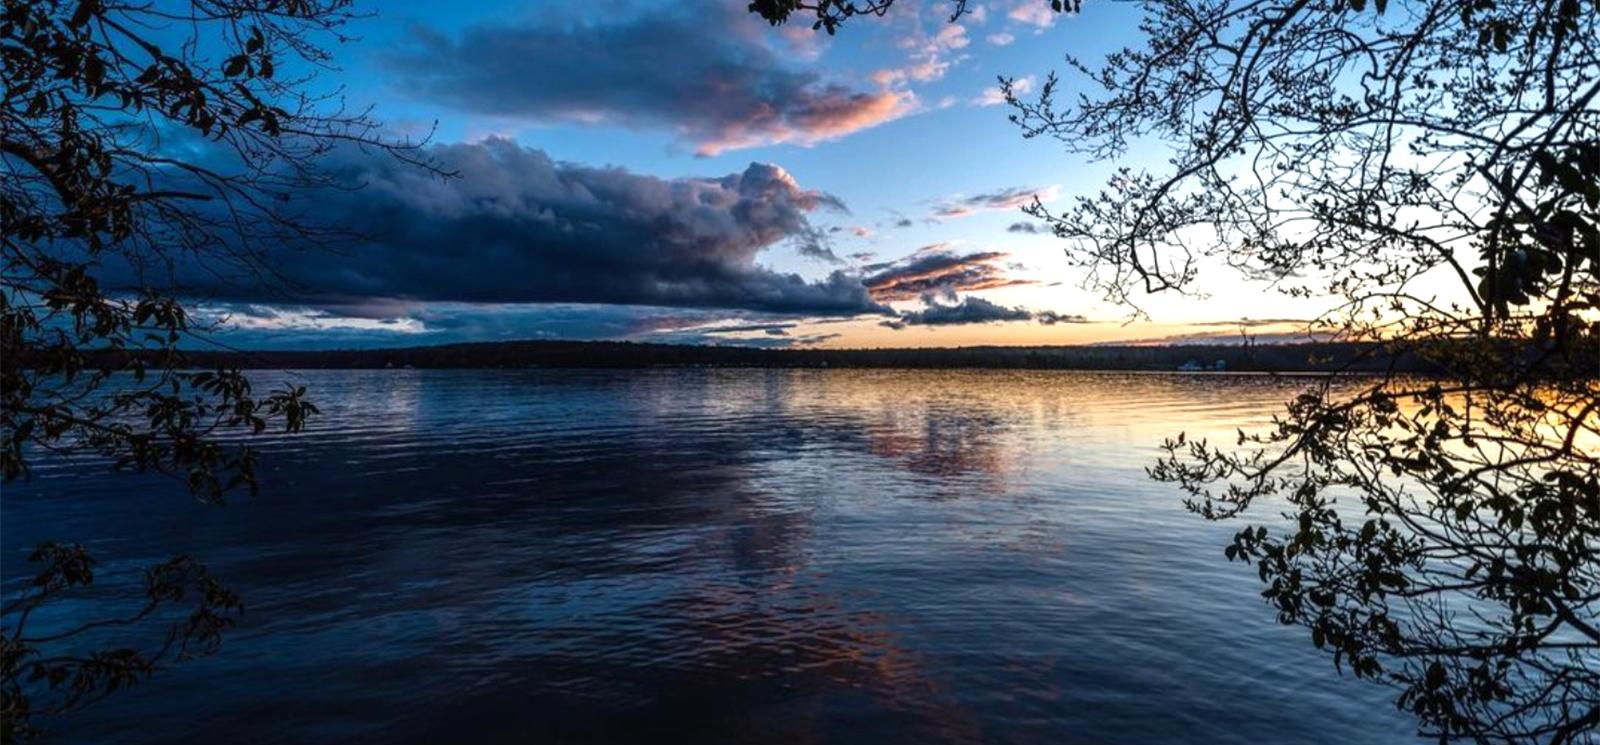 Evening at Gardner Lake (Instagram@kylescheiper)